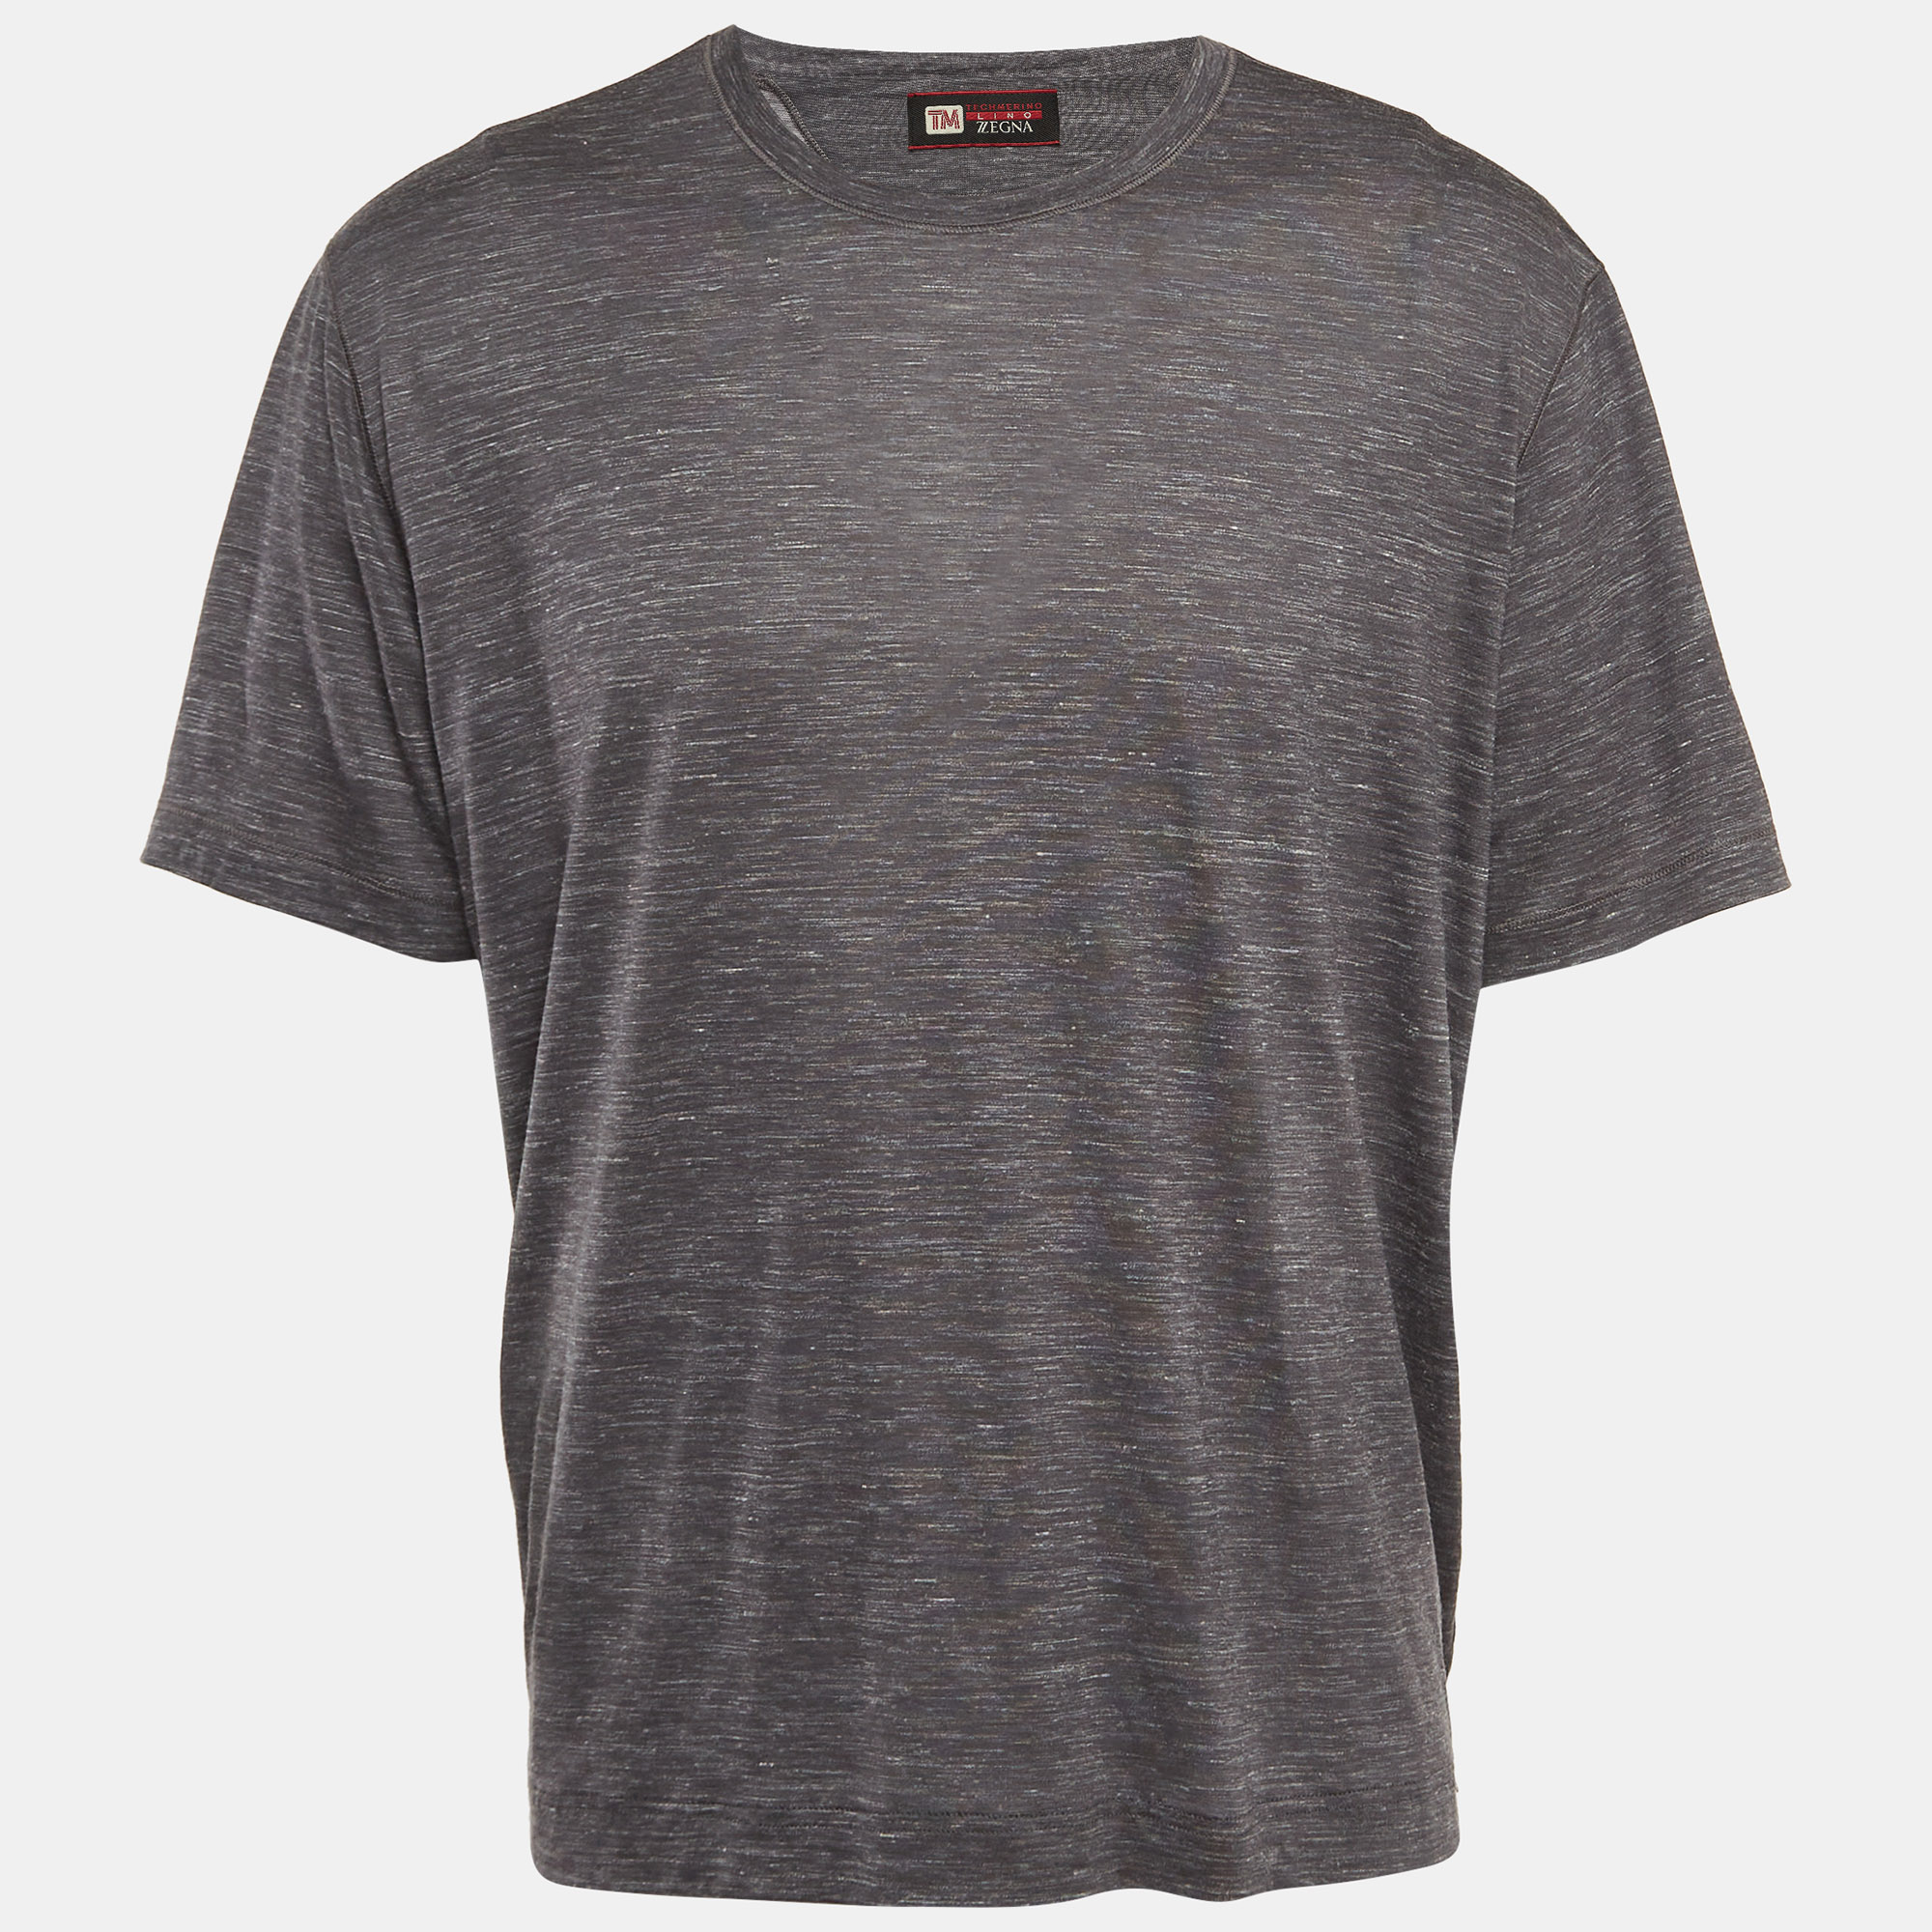 Z zegna grey wool blend jersey crew neck t-shirt xxl